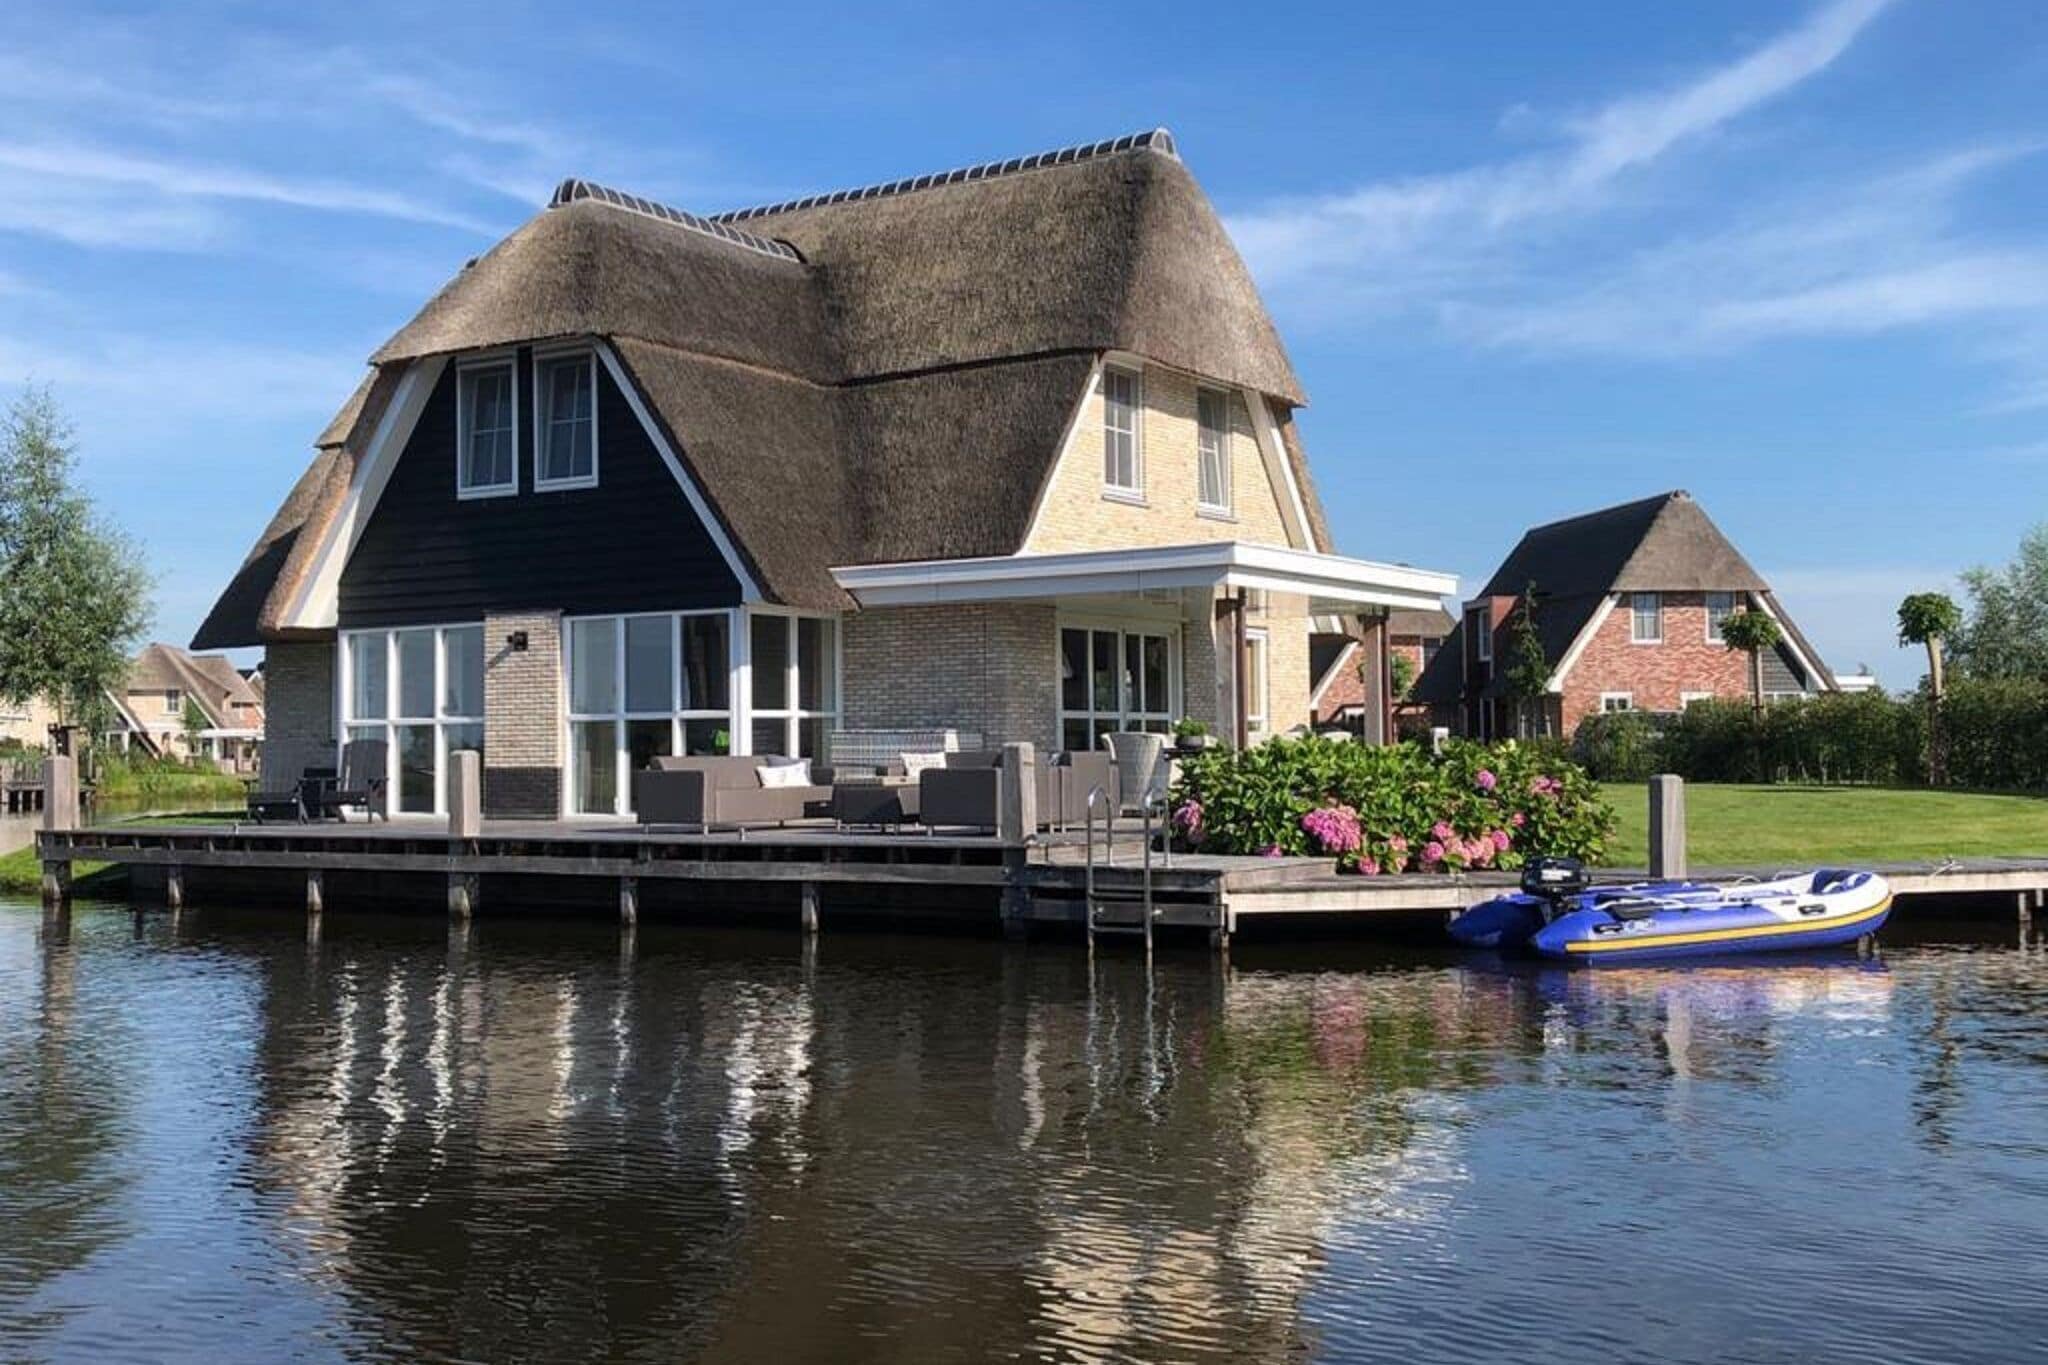 Beautiful villa with sauna on the Tjeukemeer